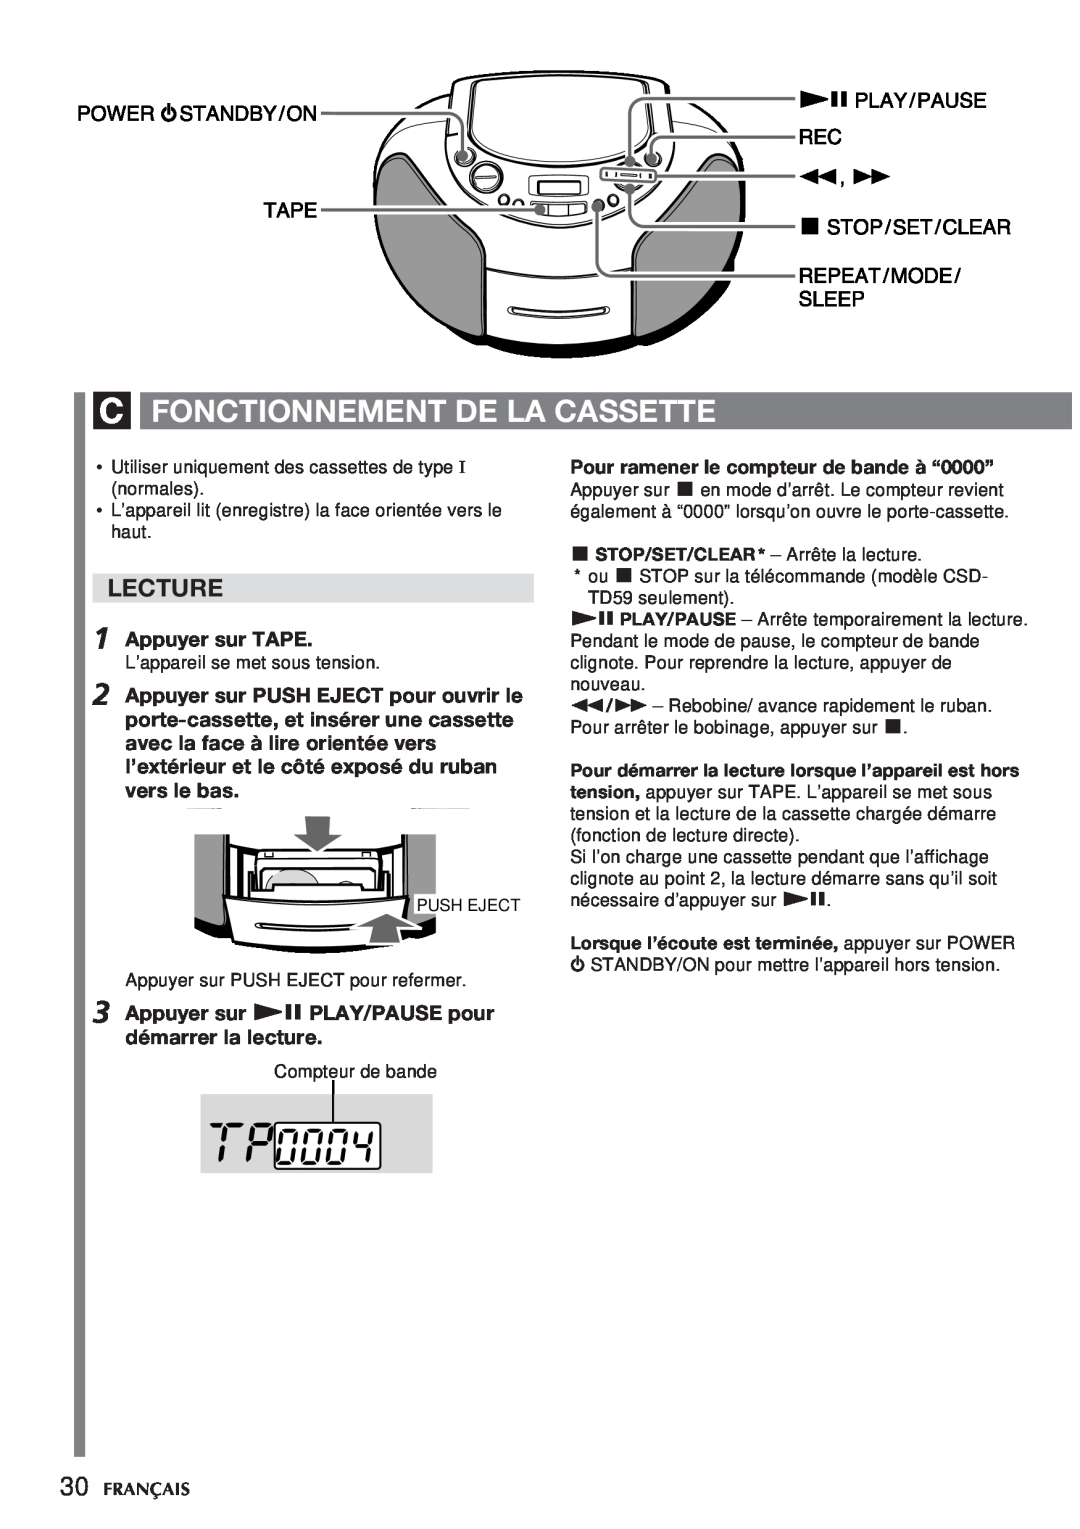 Aiwa CSD-TD59 manual C Fonctionnement De La Cassette, Lecture, Appuyer sur TAPE, Pour ramener le compteur de bande à “0000” 